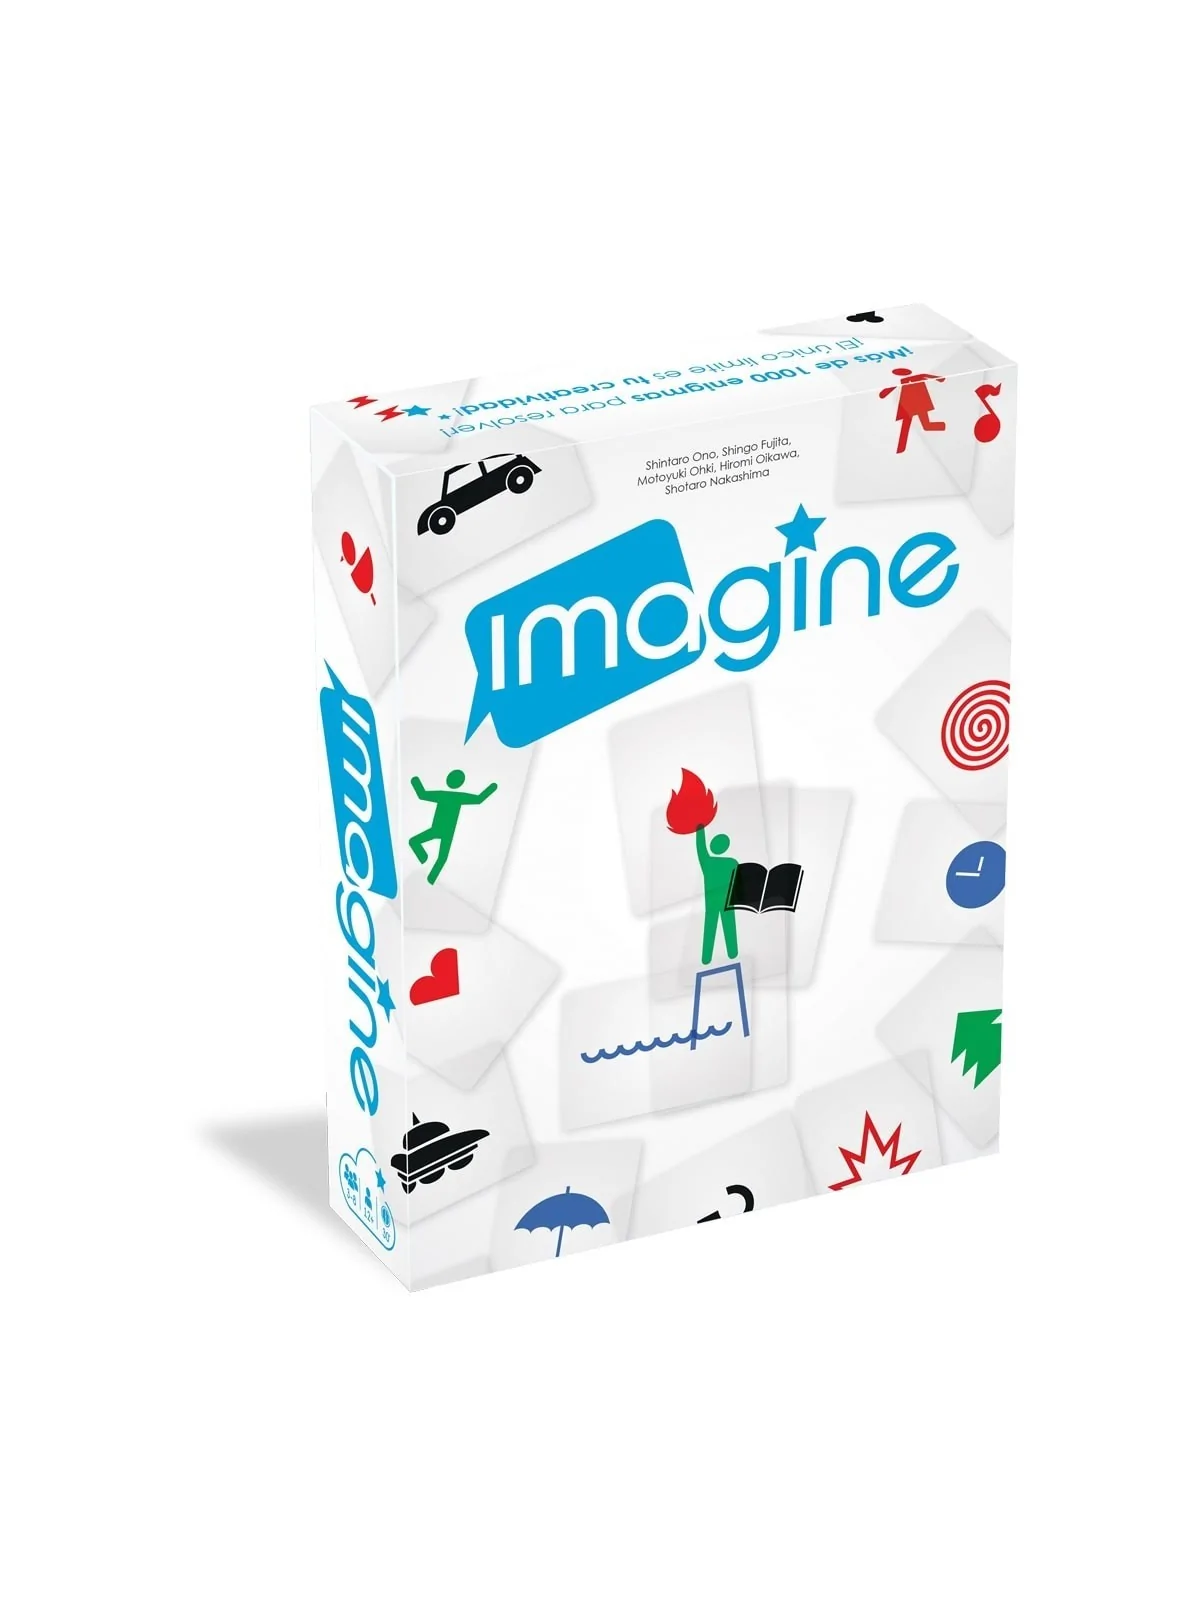 Comprar Imagine barato al mejor precio 17,99 € de Cocktail Games